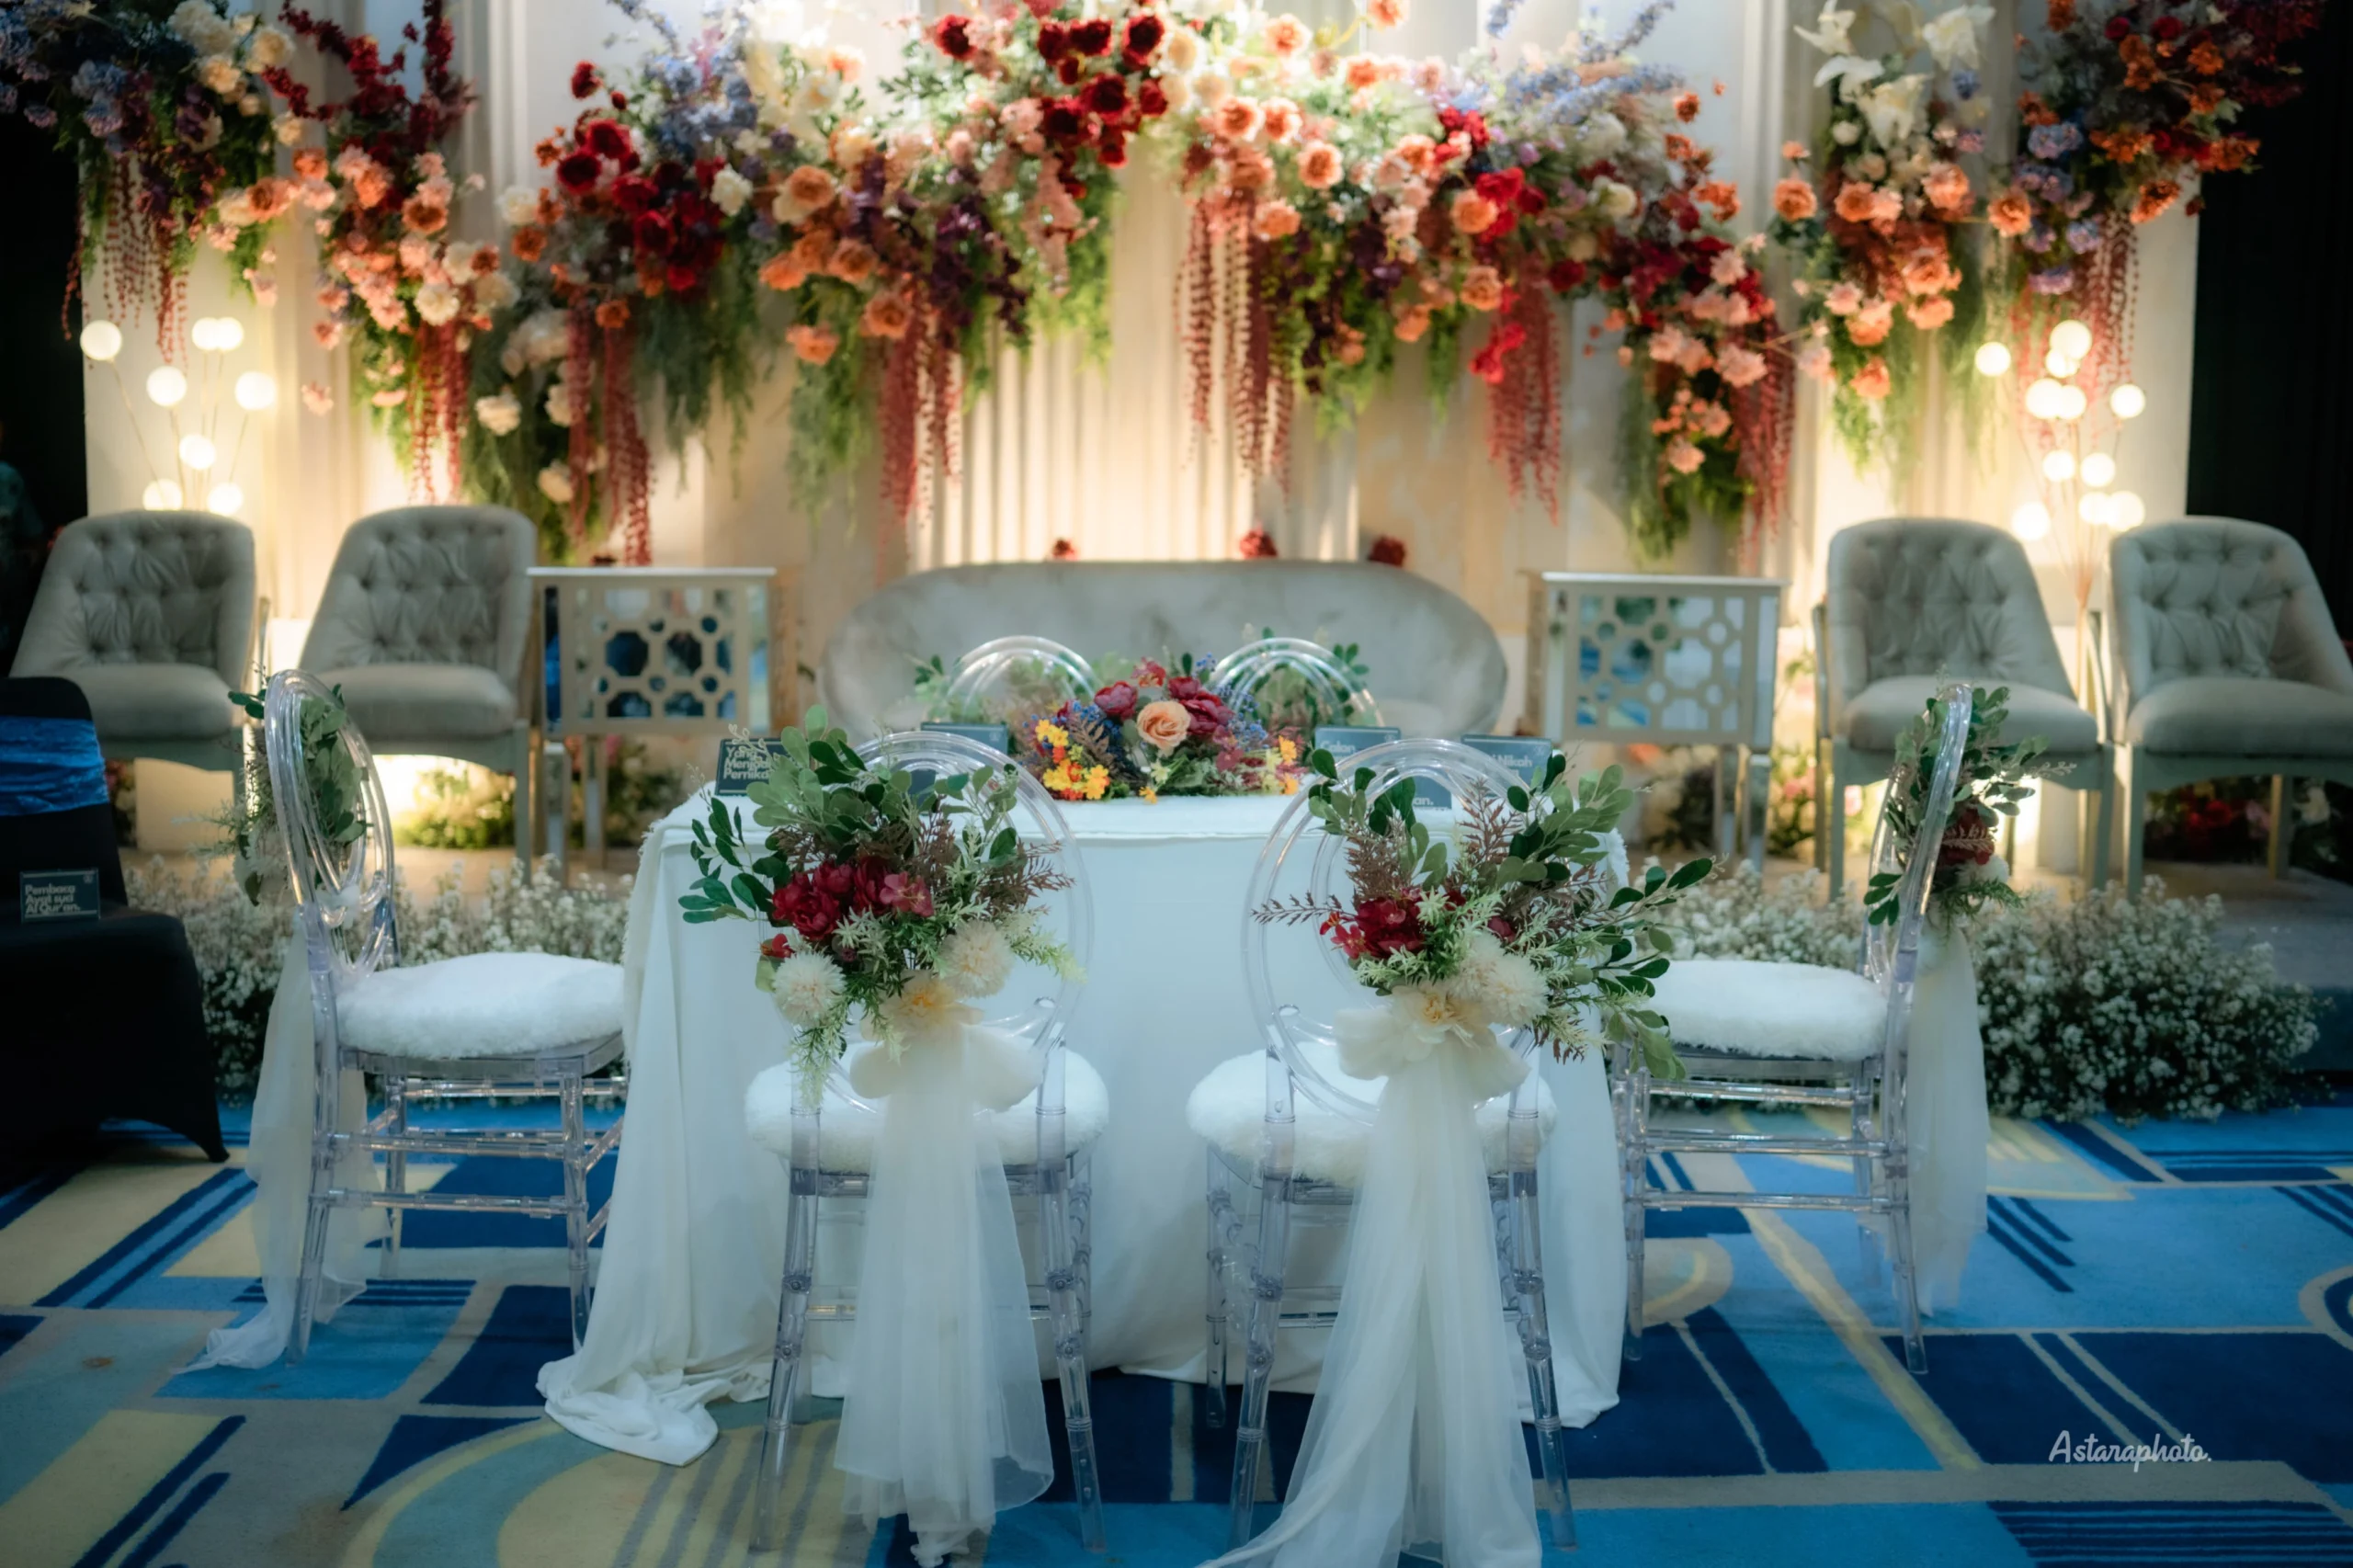 Bingung Cari Lokasi Untuk Pesta Pernikahan Impian? Vue Palace, ARTOTEL Curated-Bandung Siap Mewujudkannya